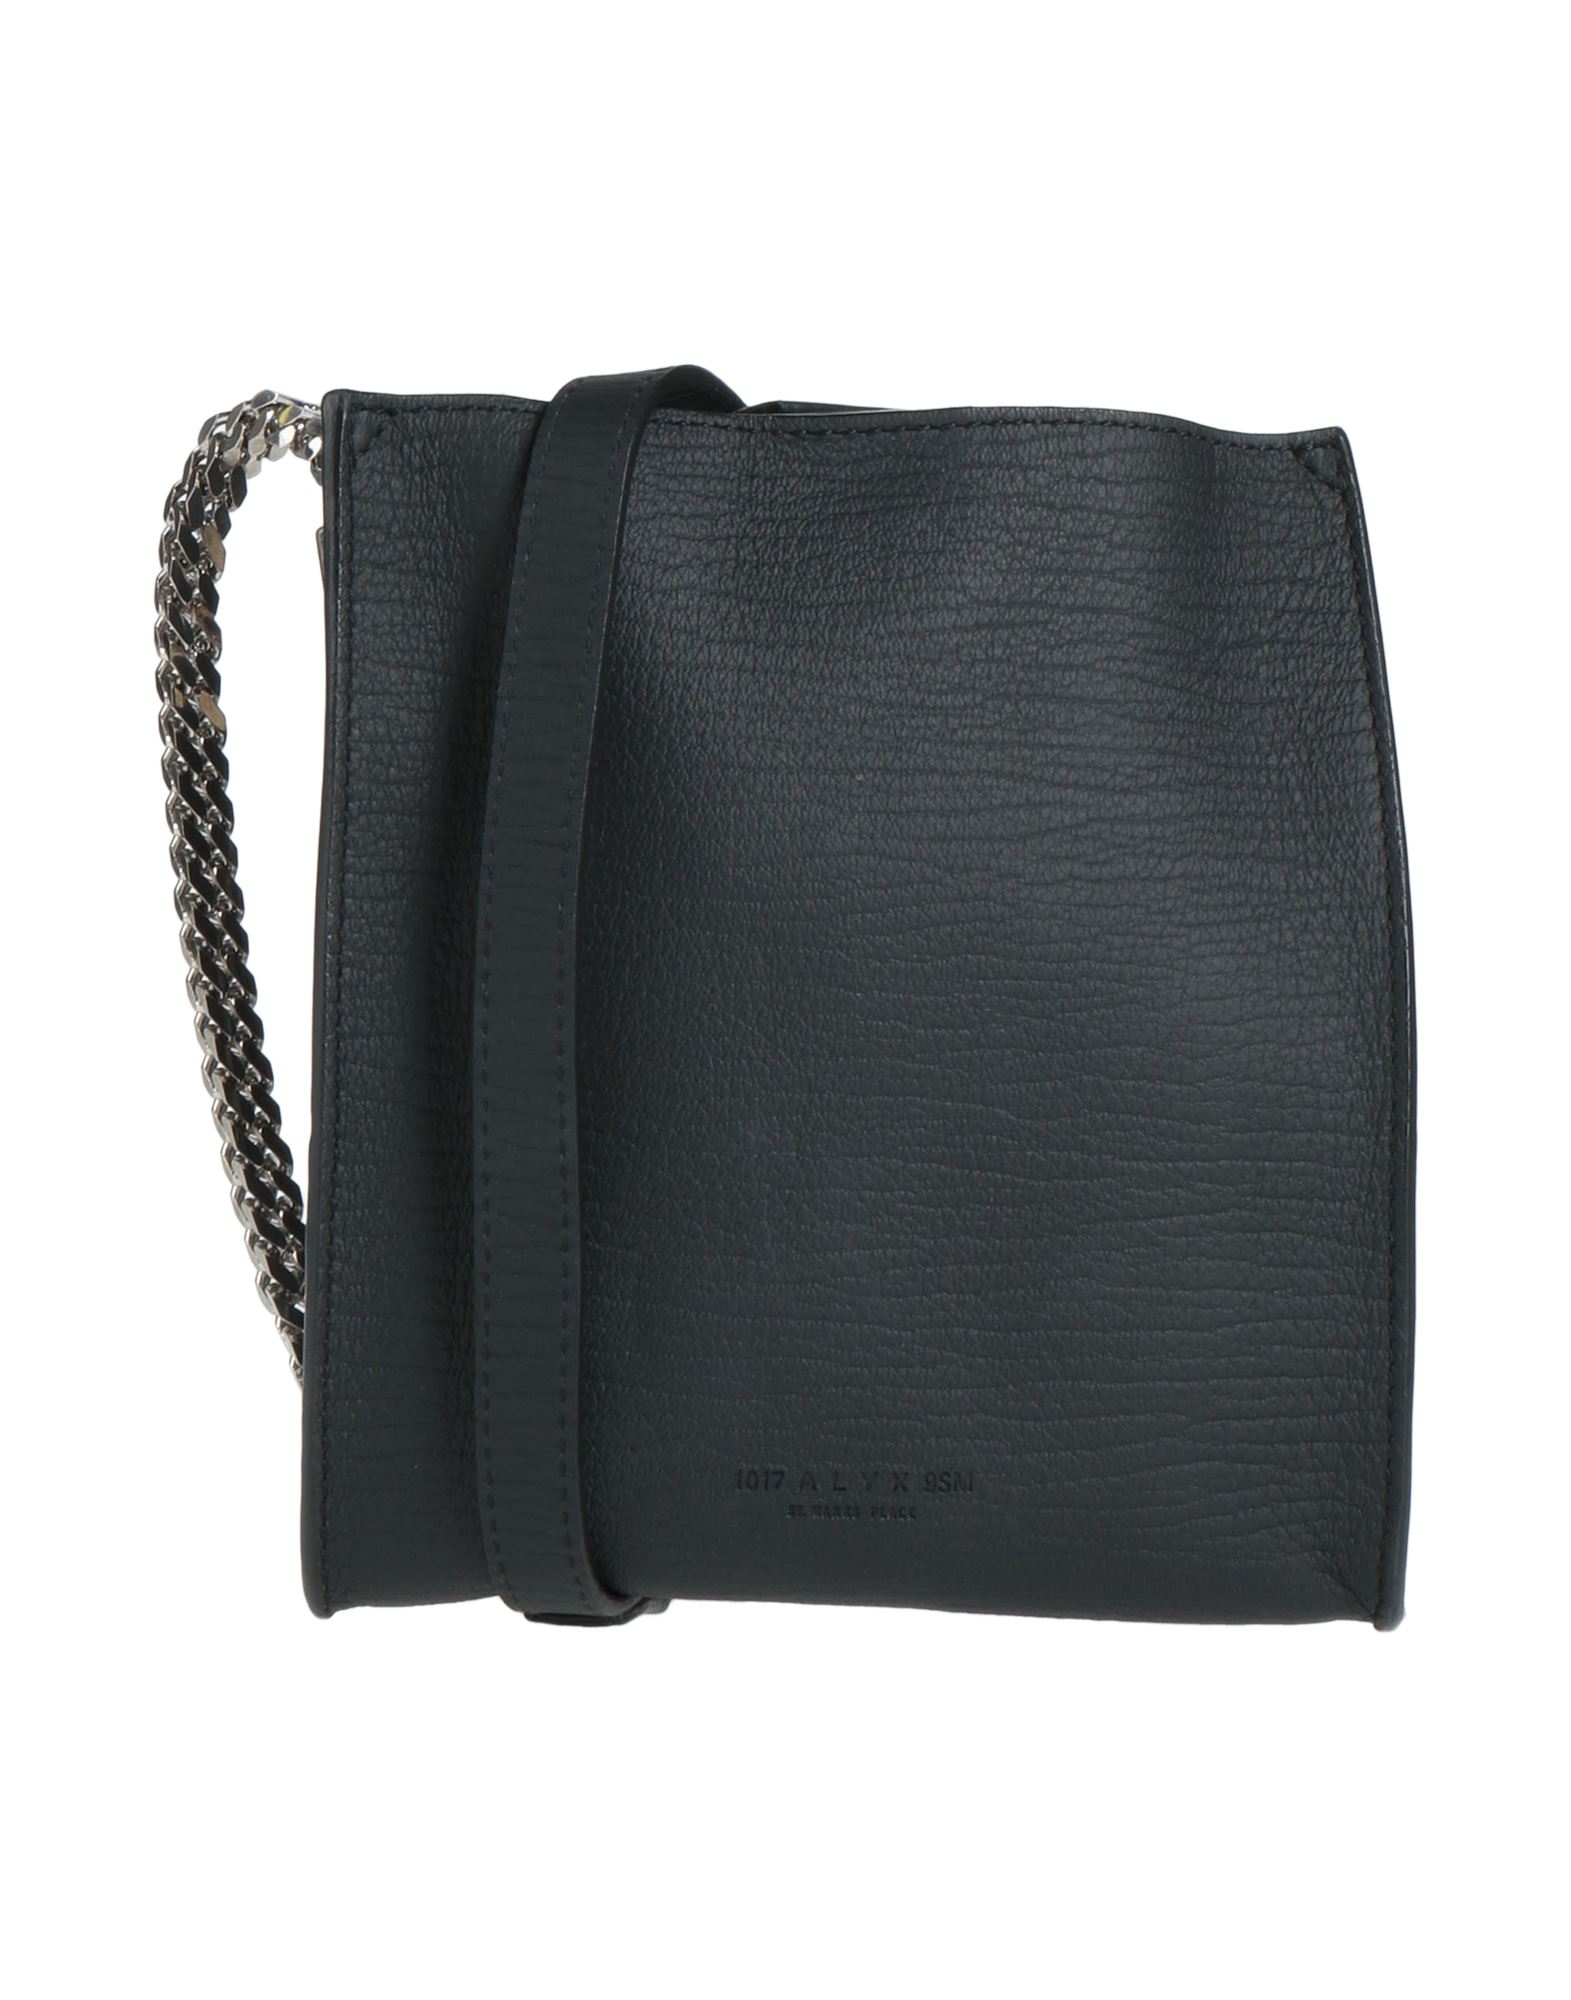 Alyx Handbags In Black